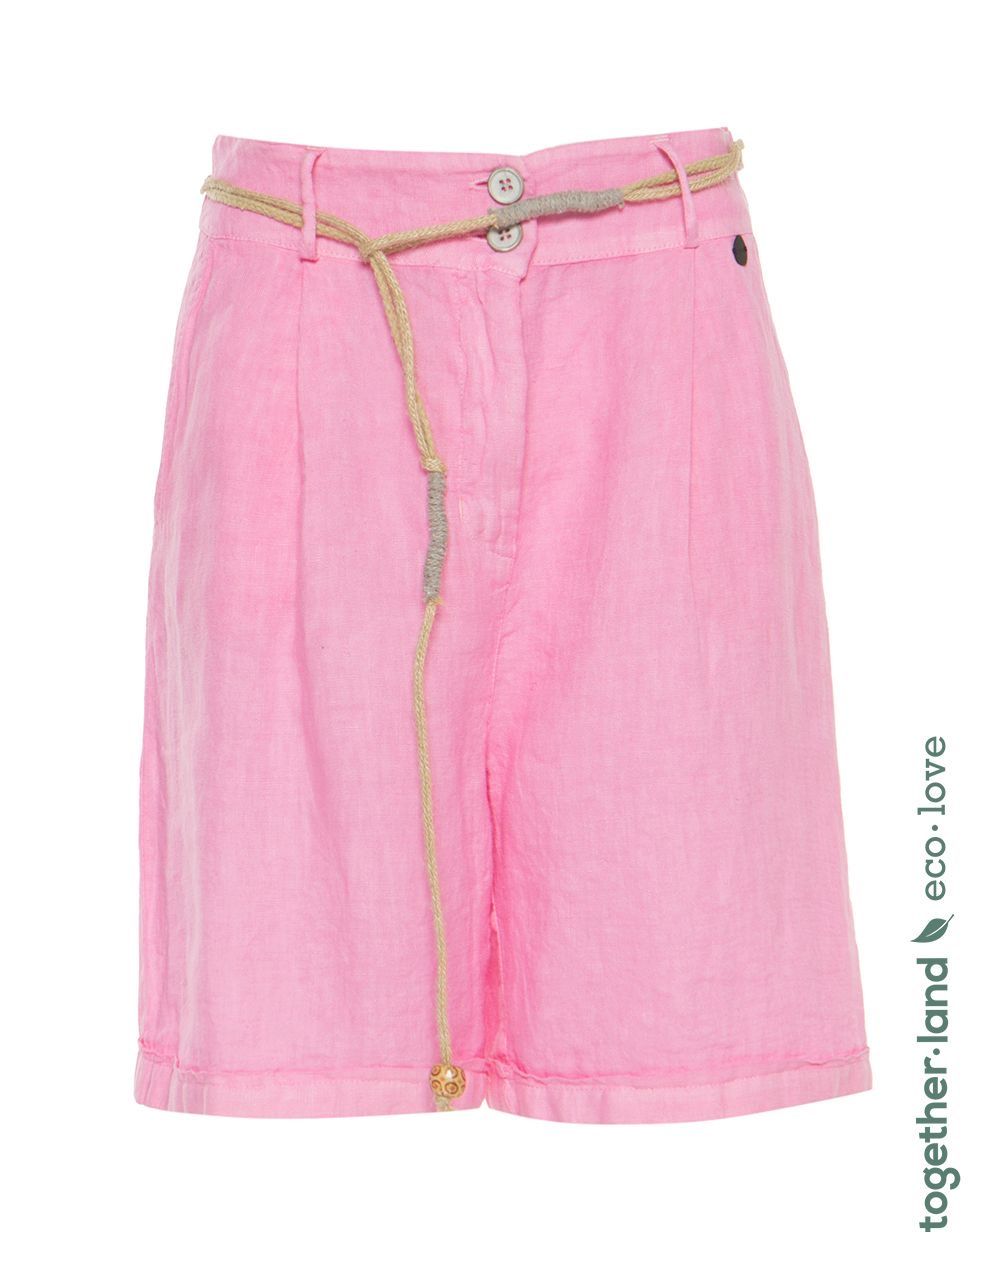 BSB Short Pink  (010 - ) - Hype Fashion (Schoten)